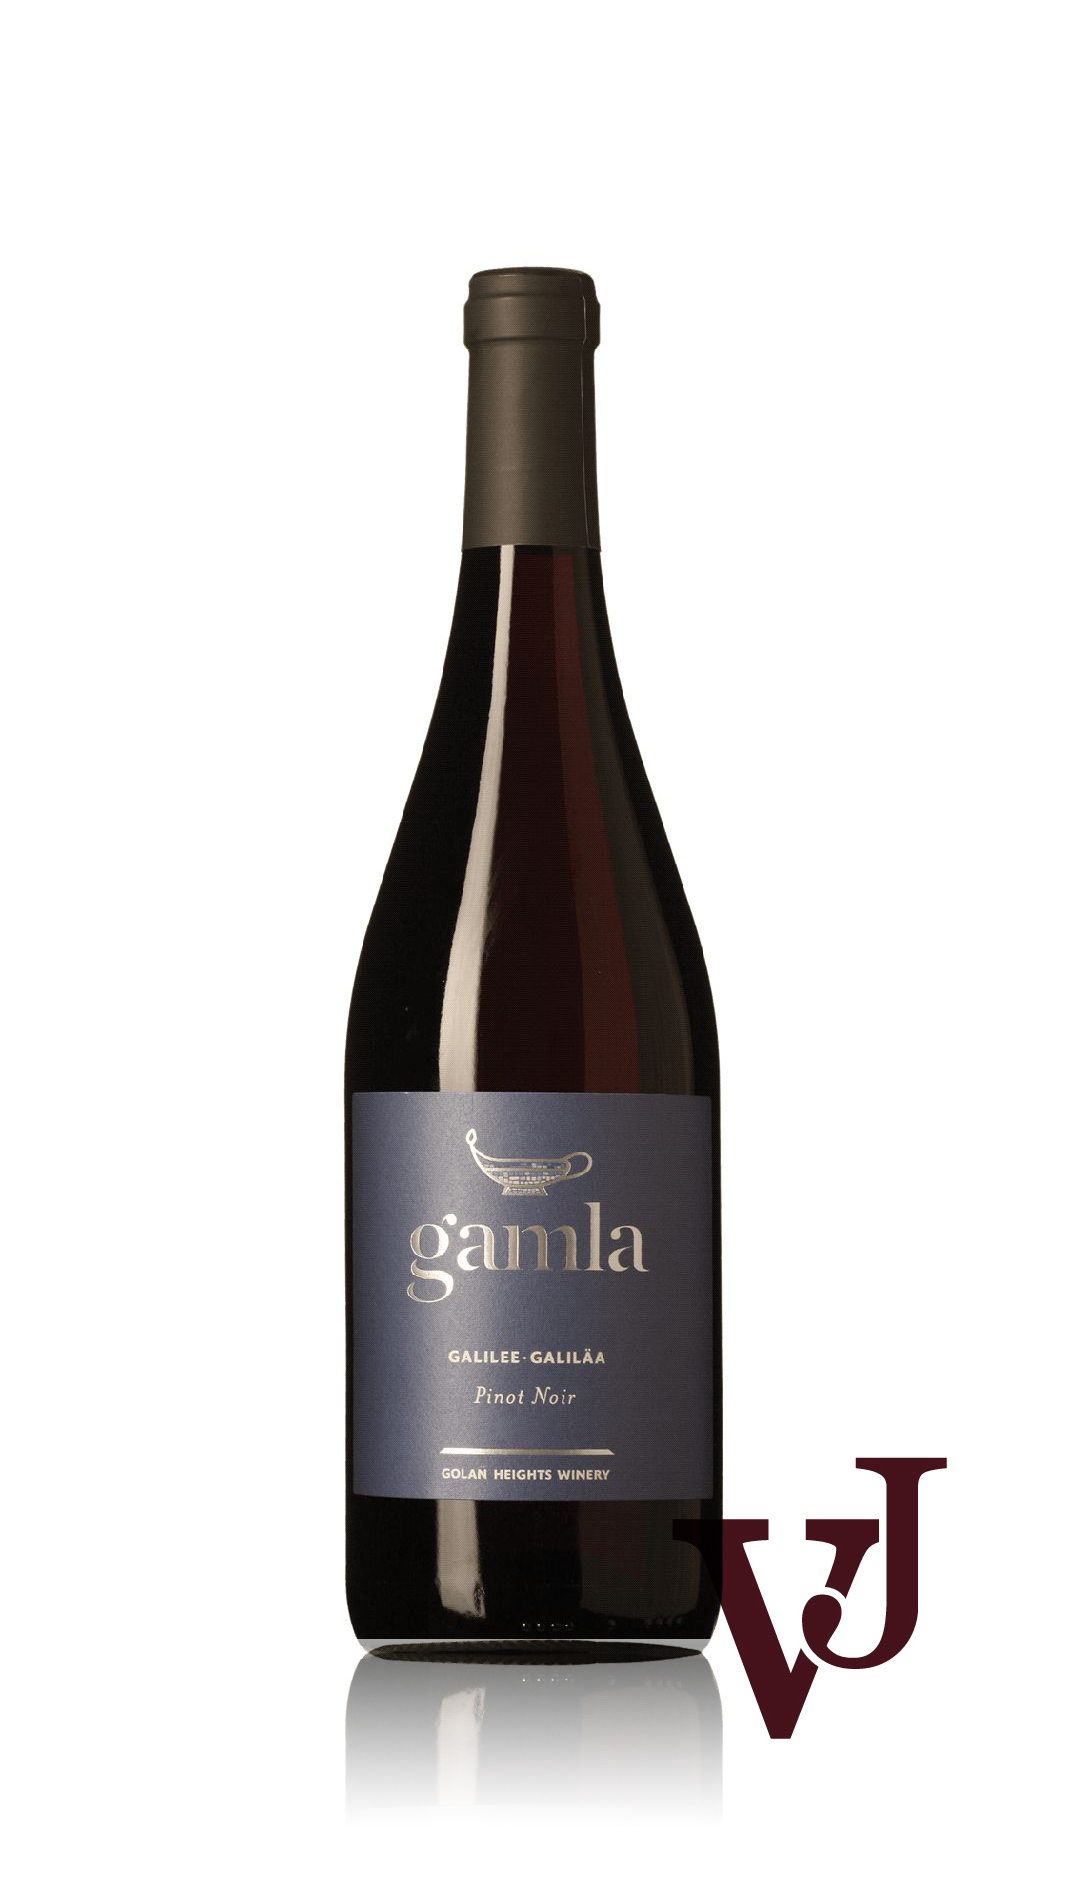 Rött Vin - Gamla Pinot Noir artikel nummer 7111601 från producenten Golan Heights Winery från området Israel